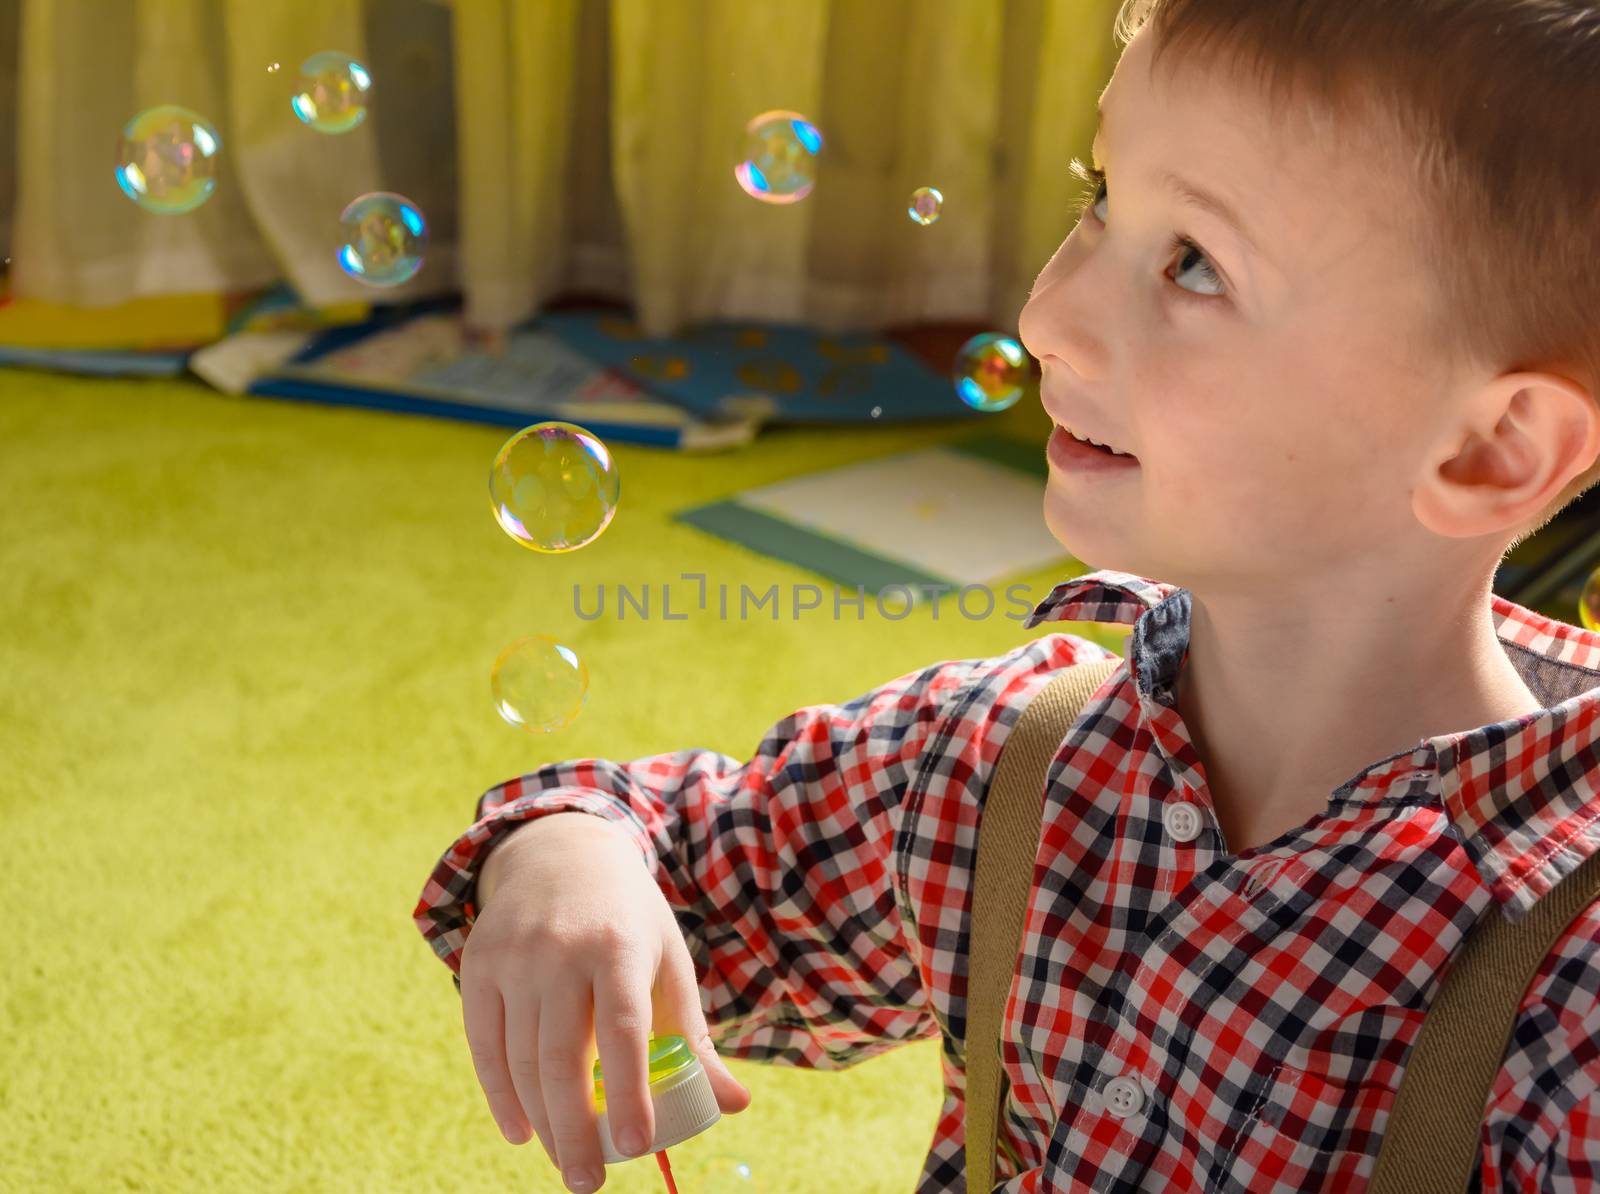 a child and soap bubbles  by markova64el